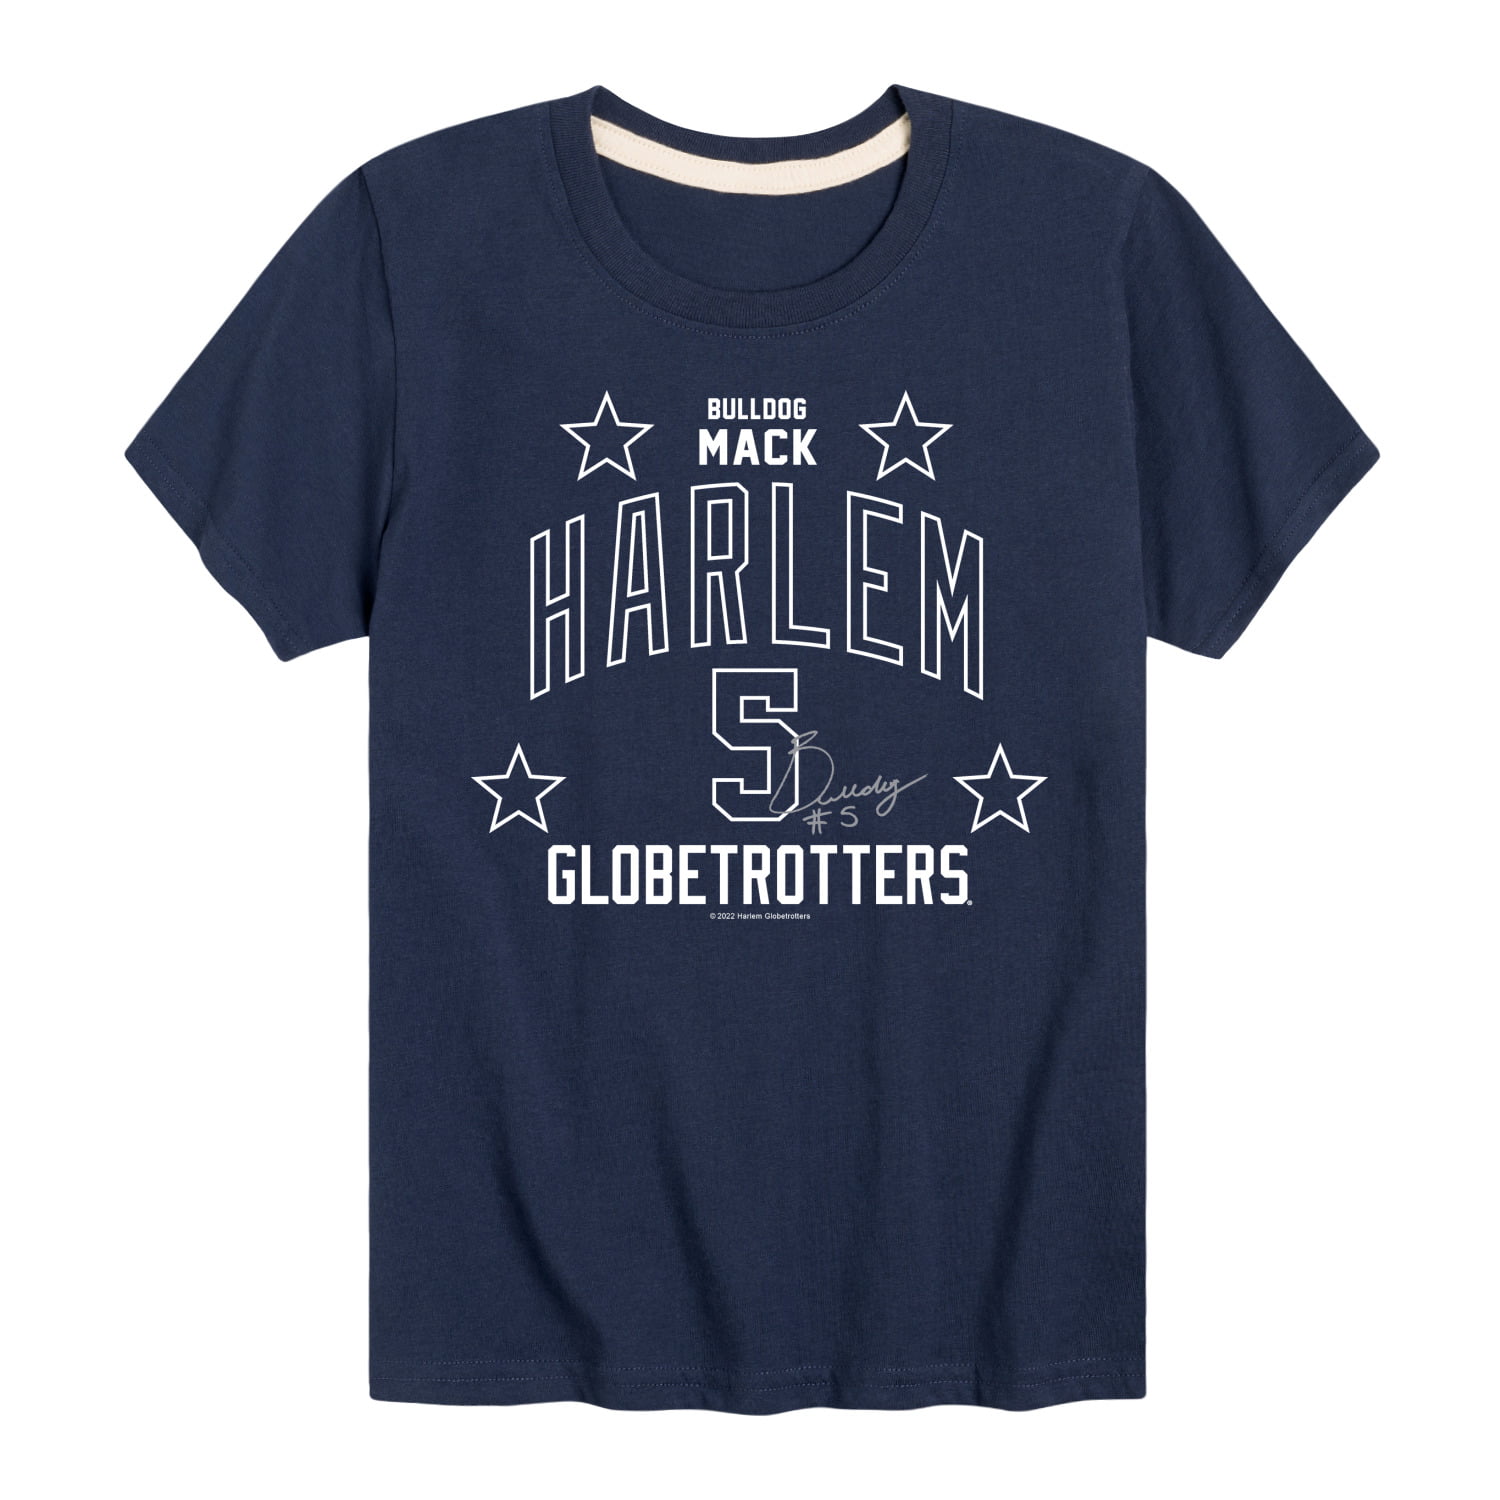 Harlem Globetrotters - Bulldog Mack - Toddler And Youth Short Sleeve ...